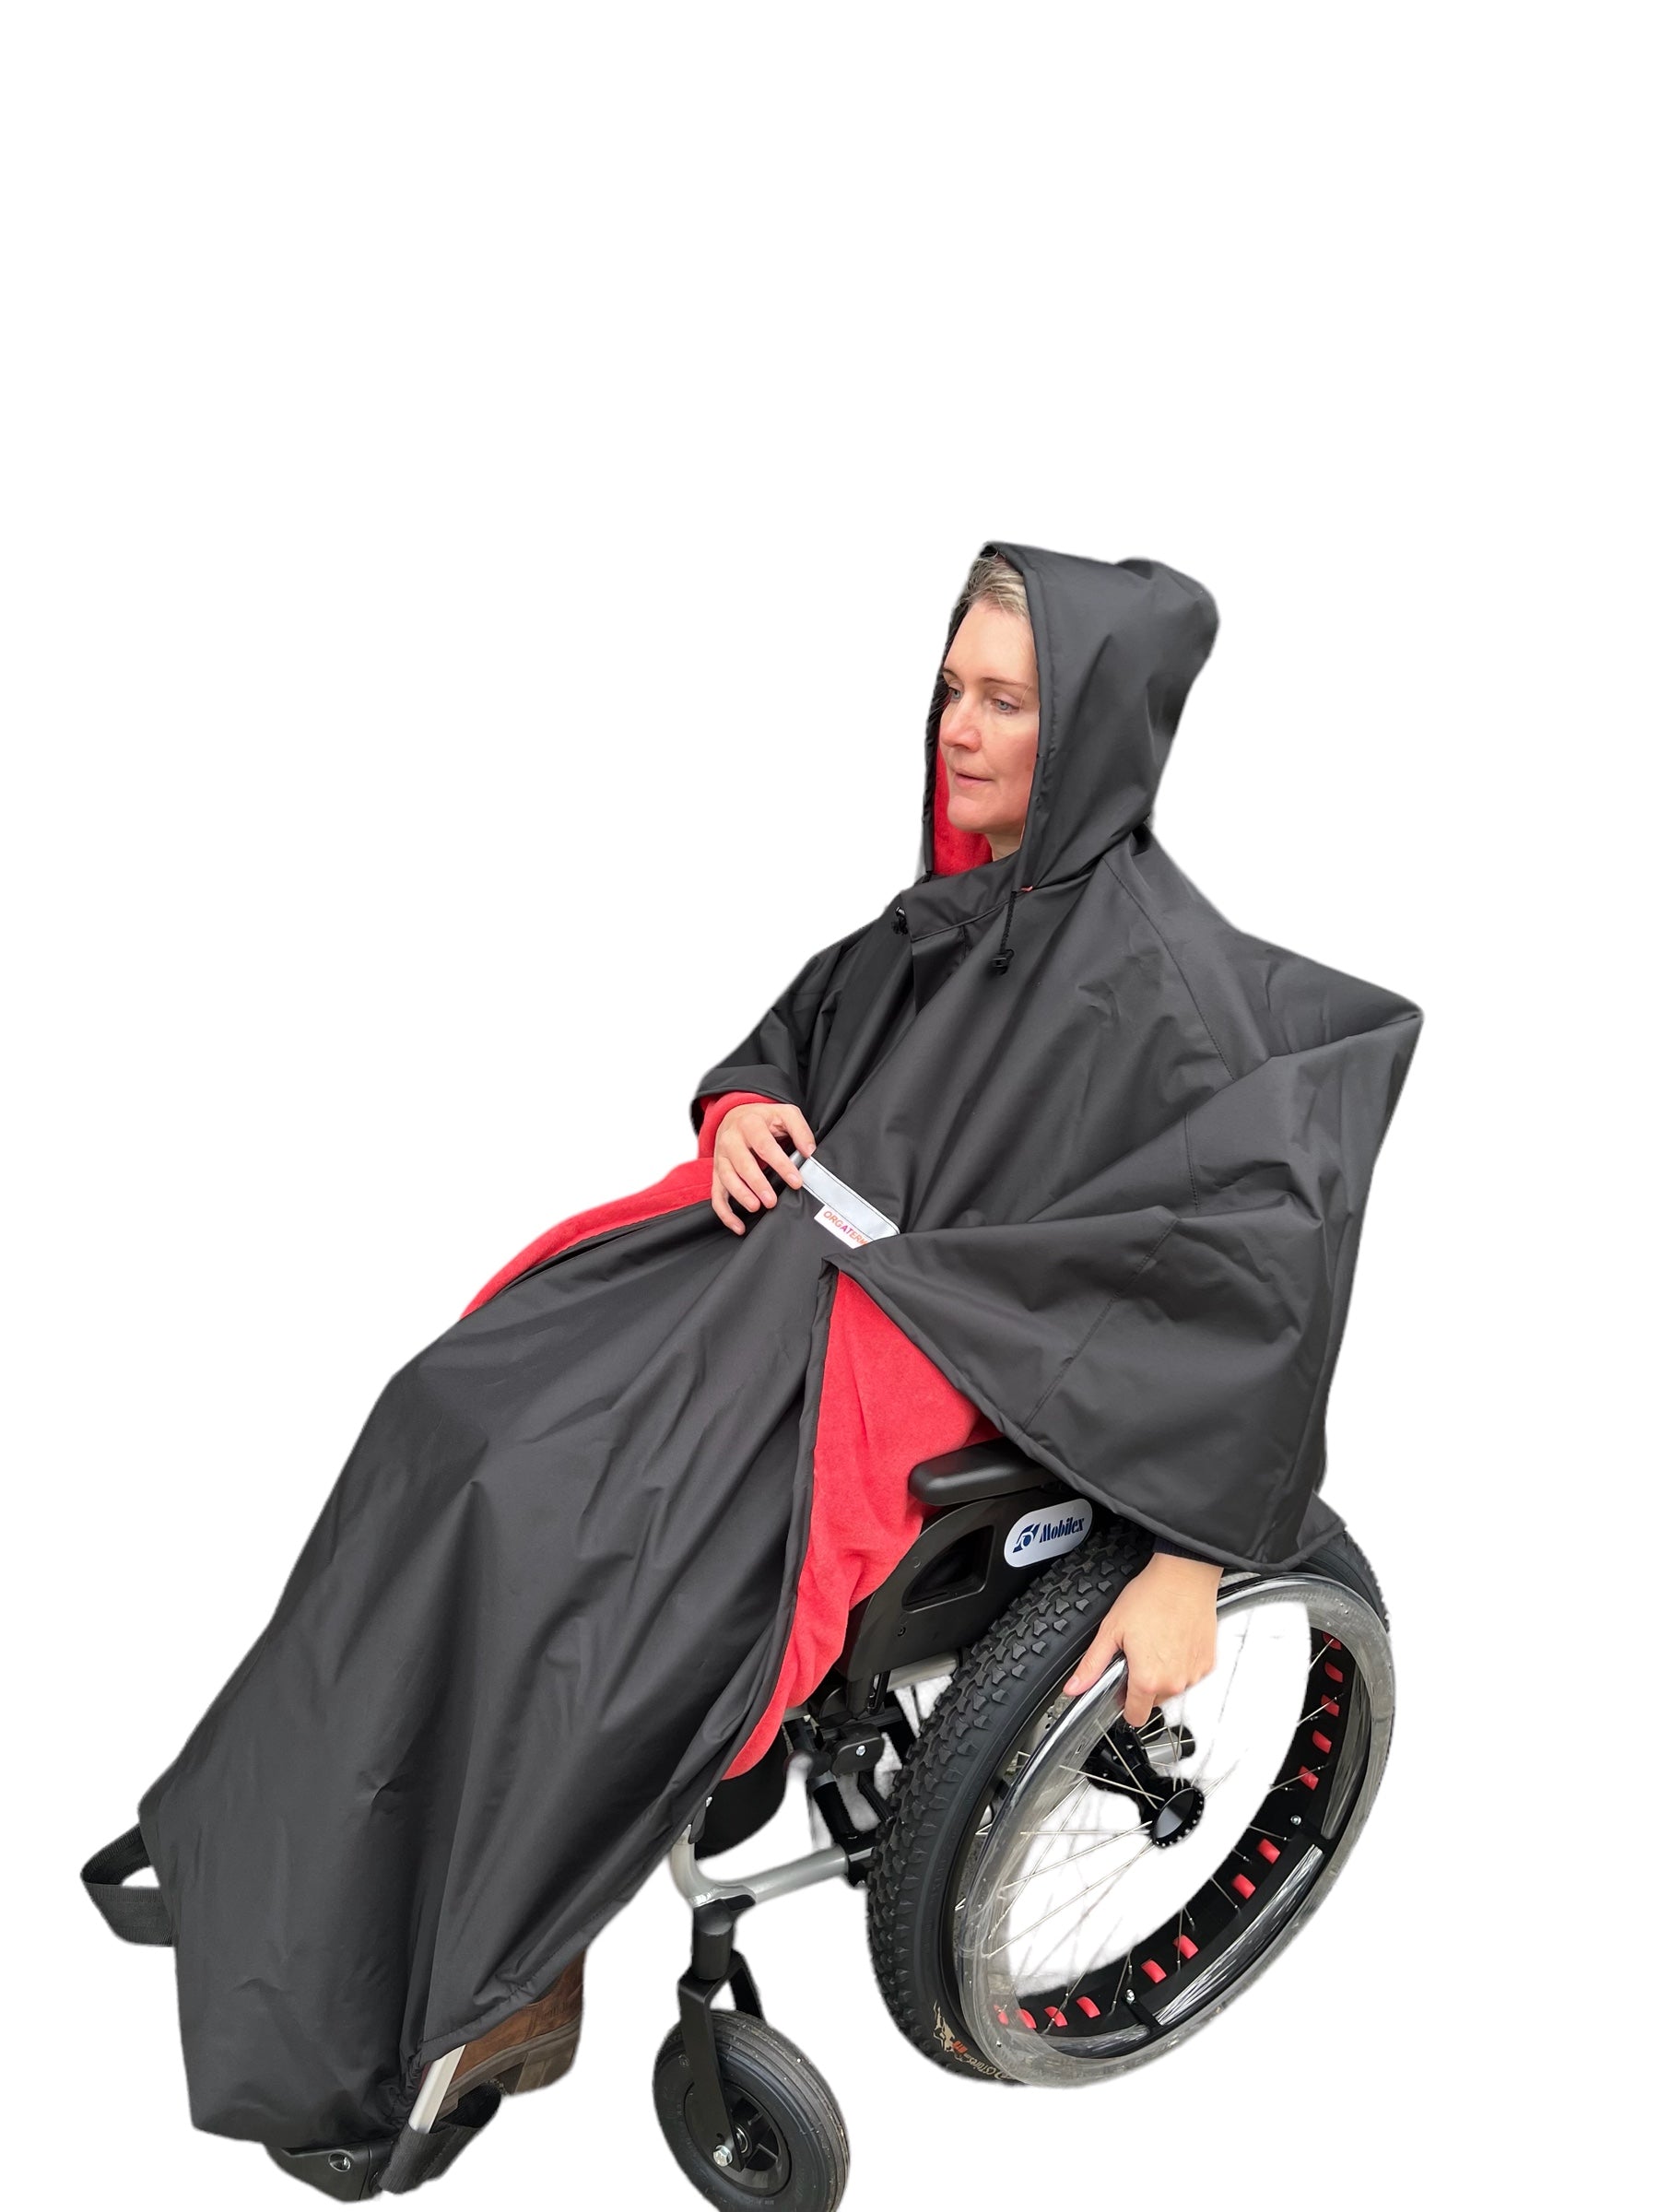 Se Vandtæt poncho med blød fleece til kørestolsbrugere - Beskyttelse mod regn og kulde - 3 str, MEDIUM/SIZE 4 (BLÅ/GRÅ) hos Seniorpleje